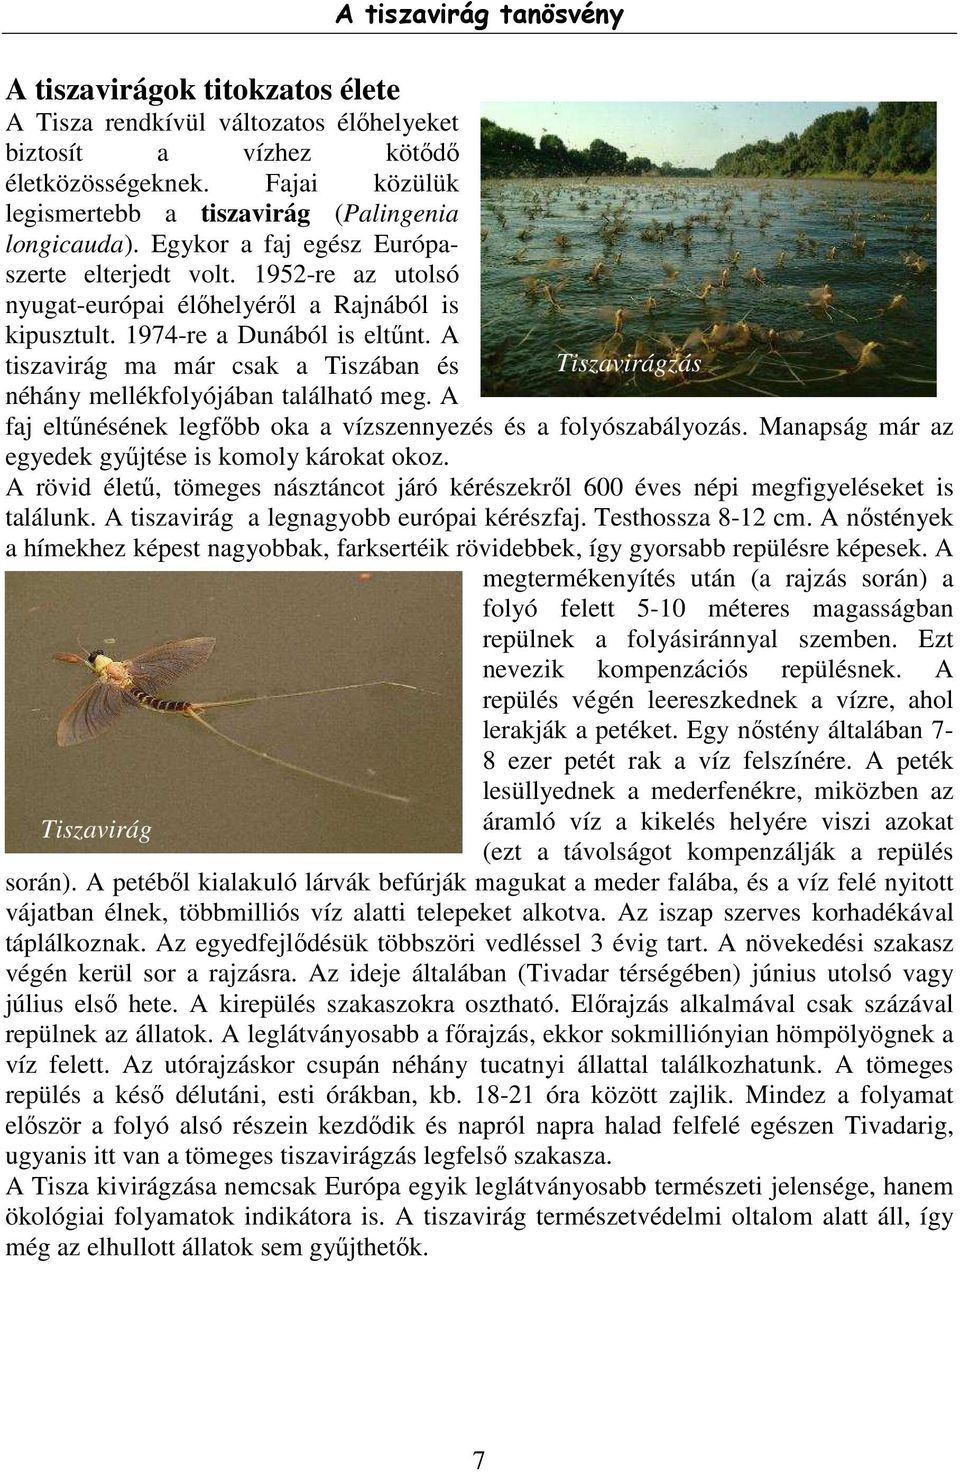 A tiszavirág ma már csak a Tiszában és néhány mellékfolyójában található meg. A A tiszavirág tanösvény faj eltűnésének legfőbb oka a vízszennyezés és a folyószabályozás.